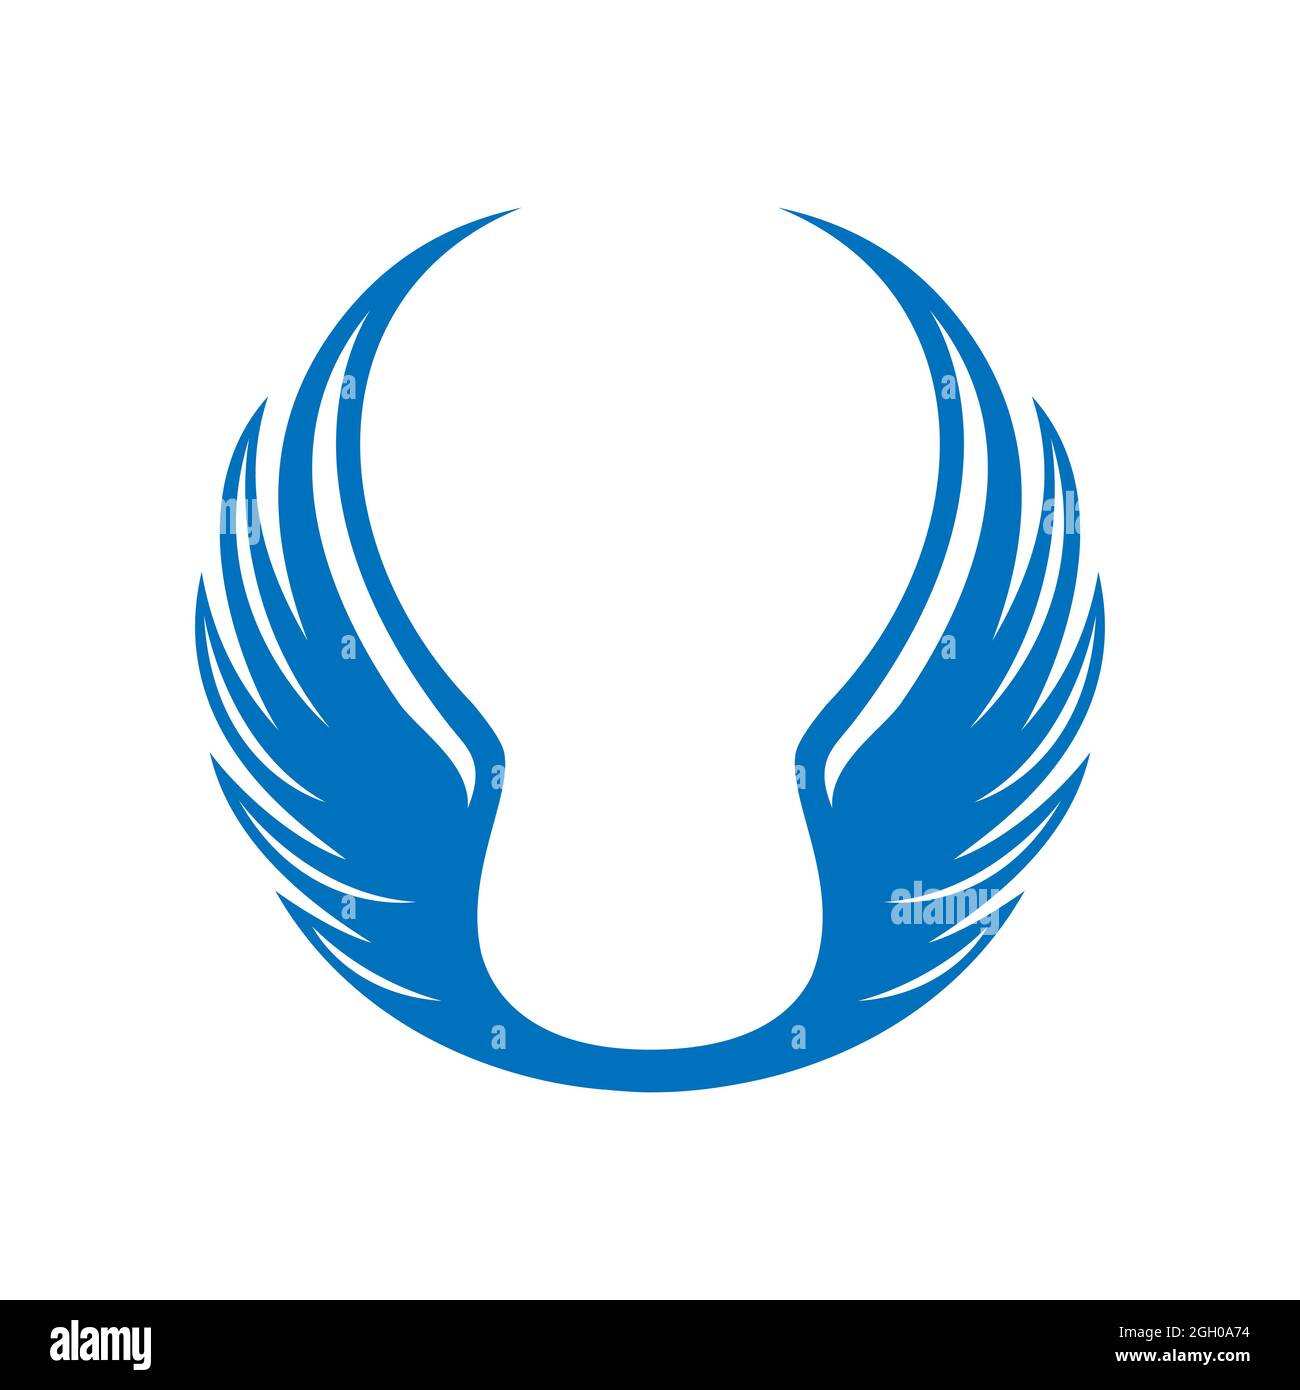 Benutzerdefinierte abstrakte runde blaue Flügel Design-Vektor auf den Kreis Symbol Illustrationen Stock Vektor